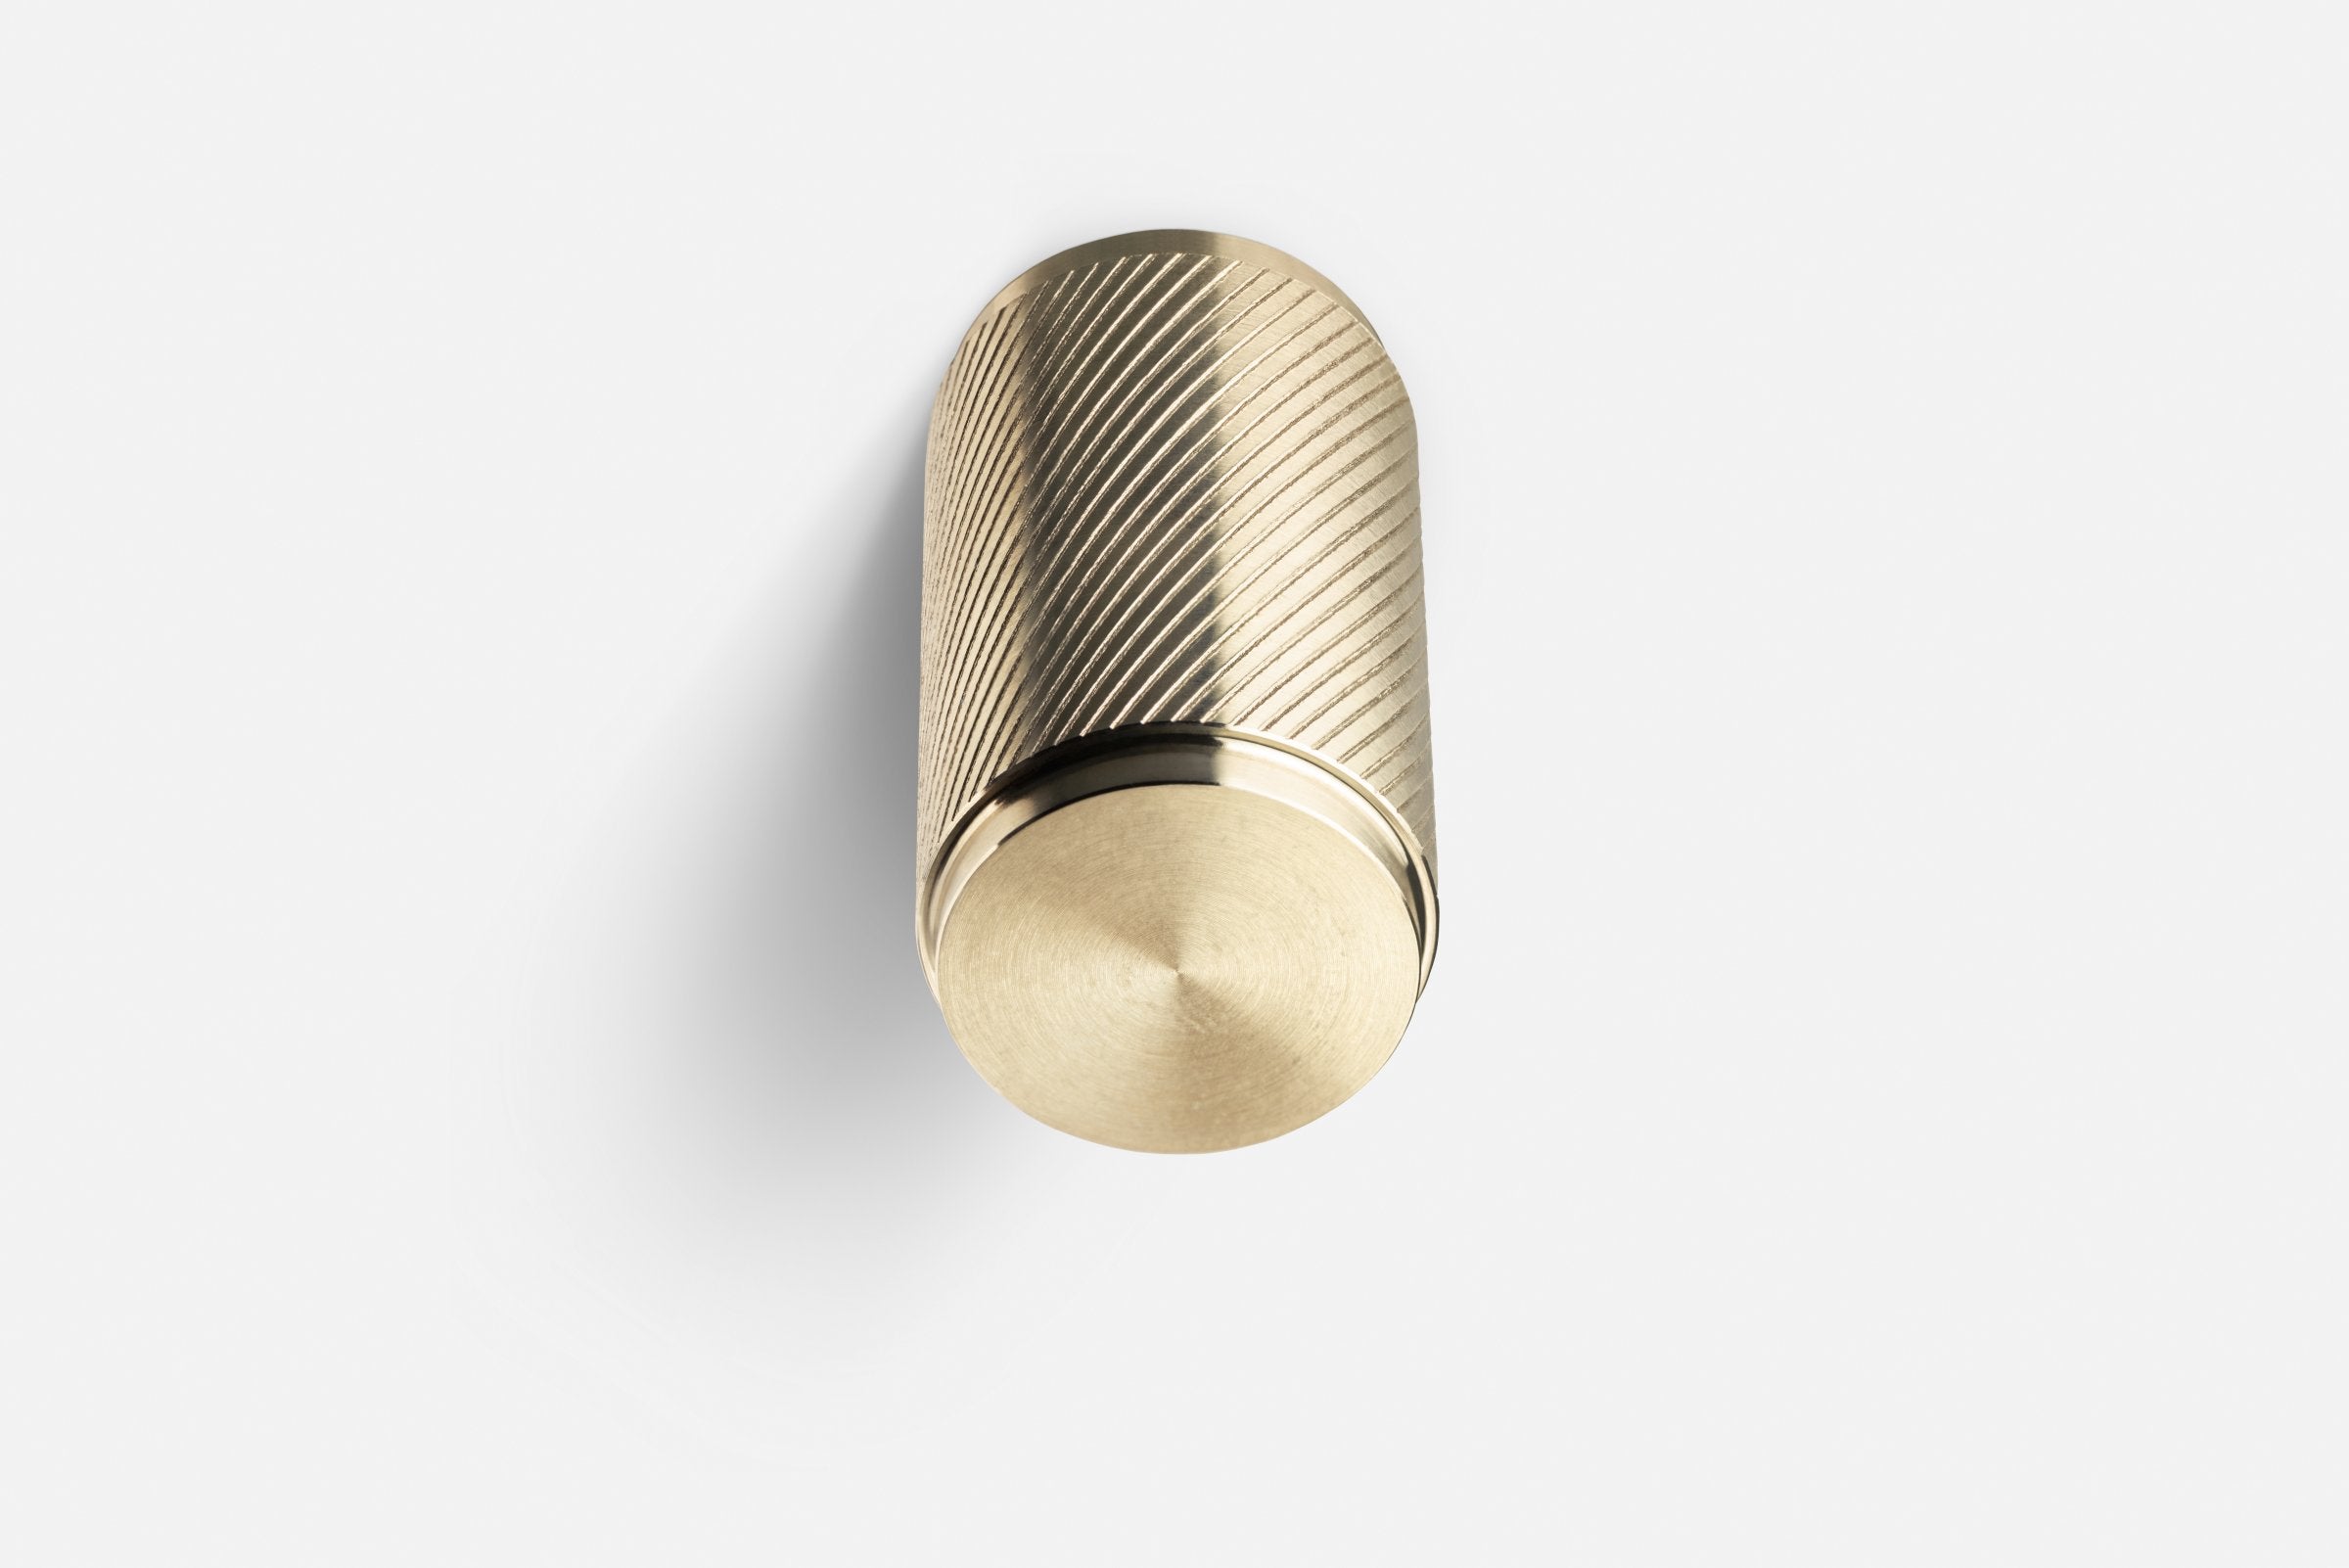 artisan gold furniture knob